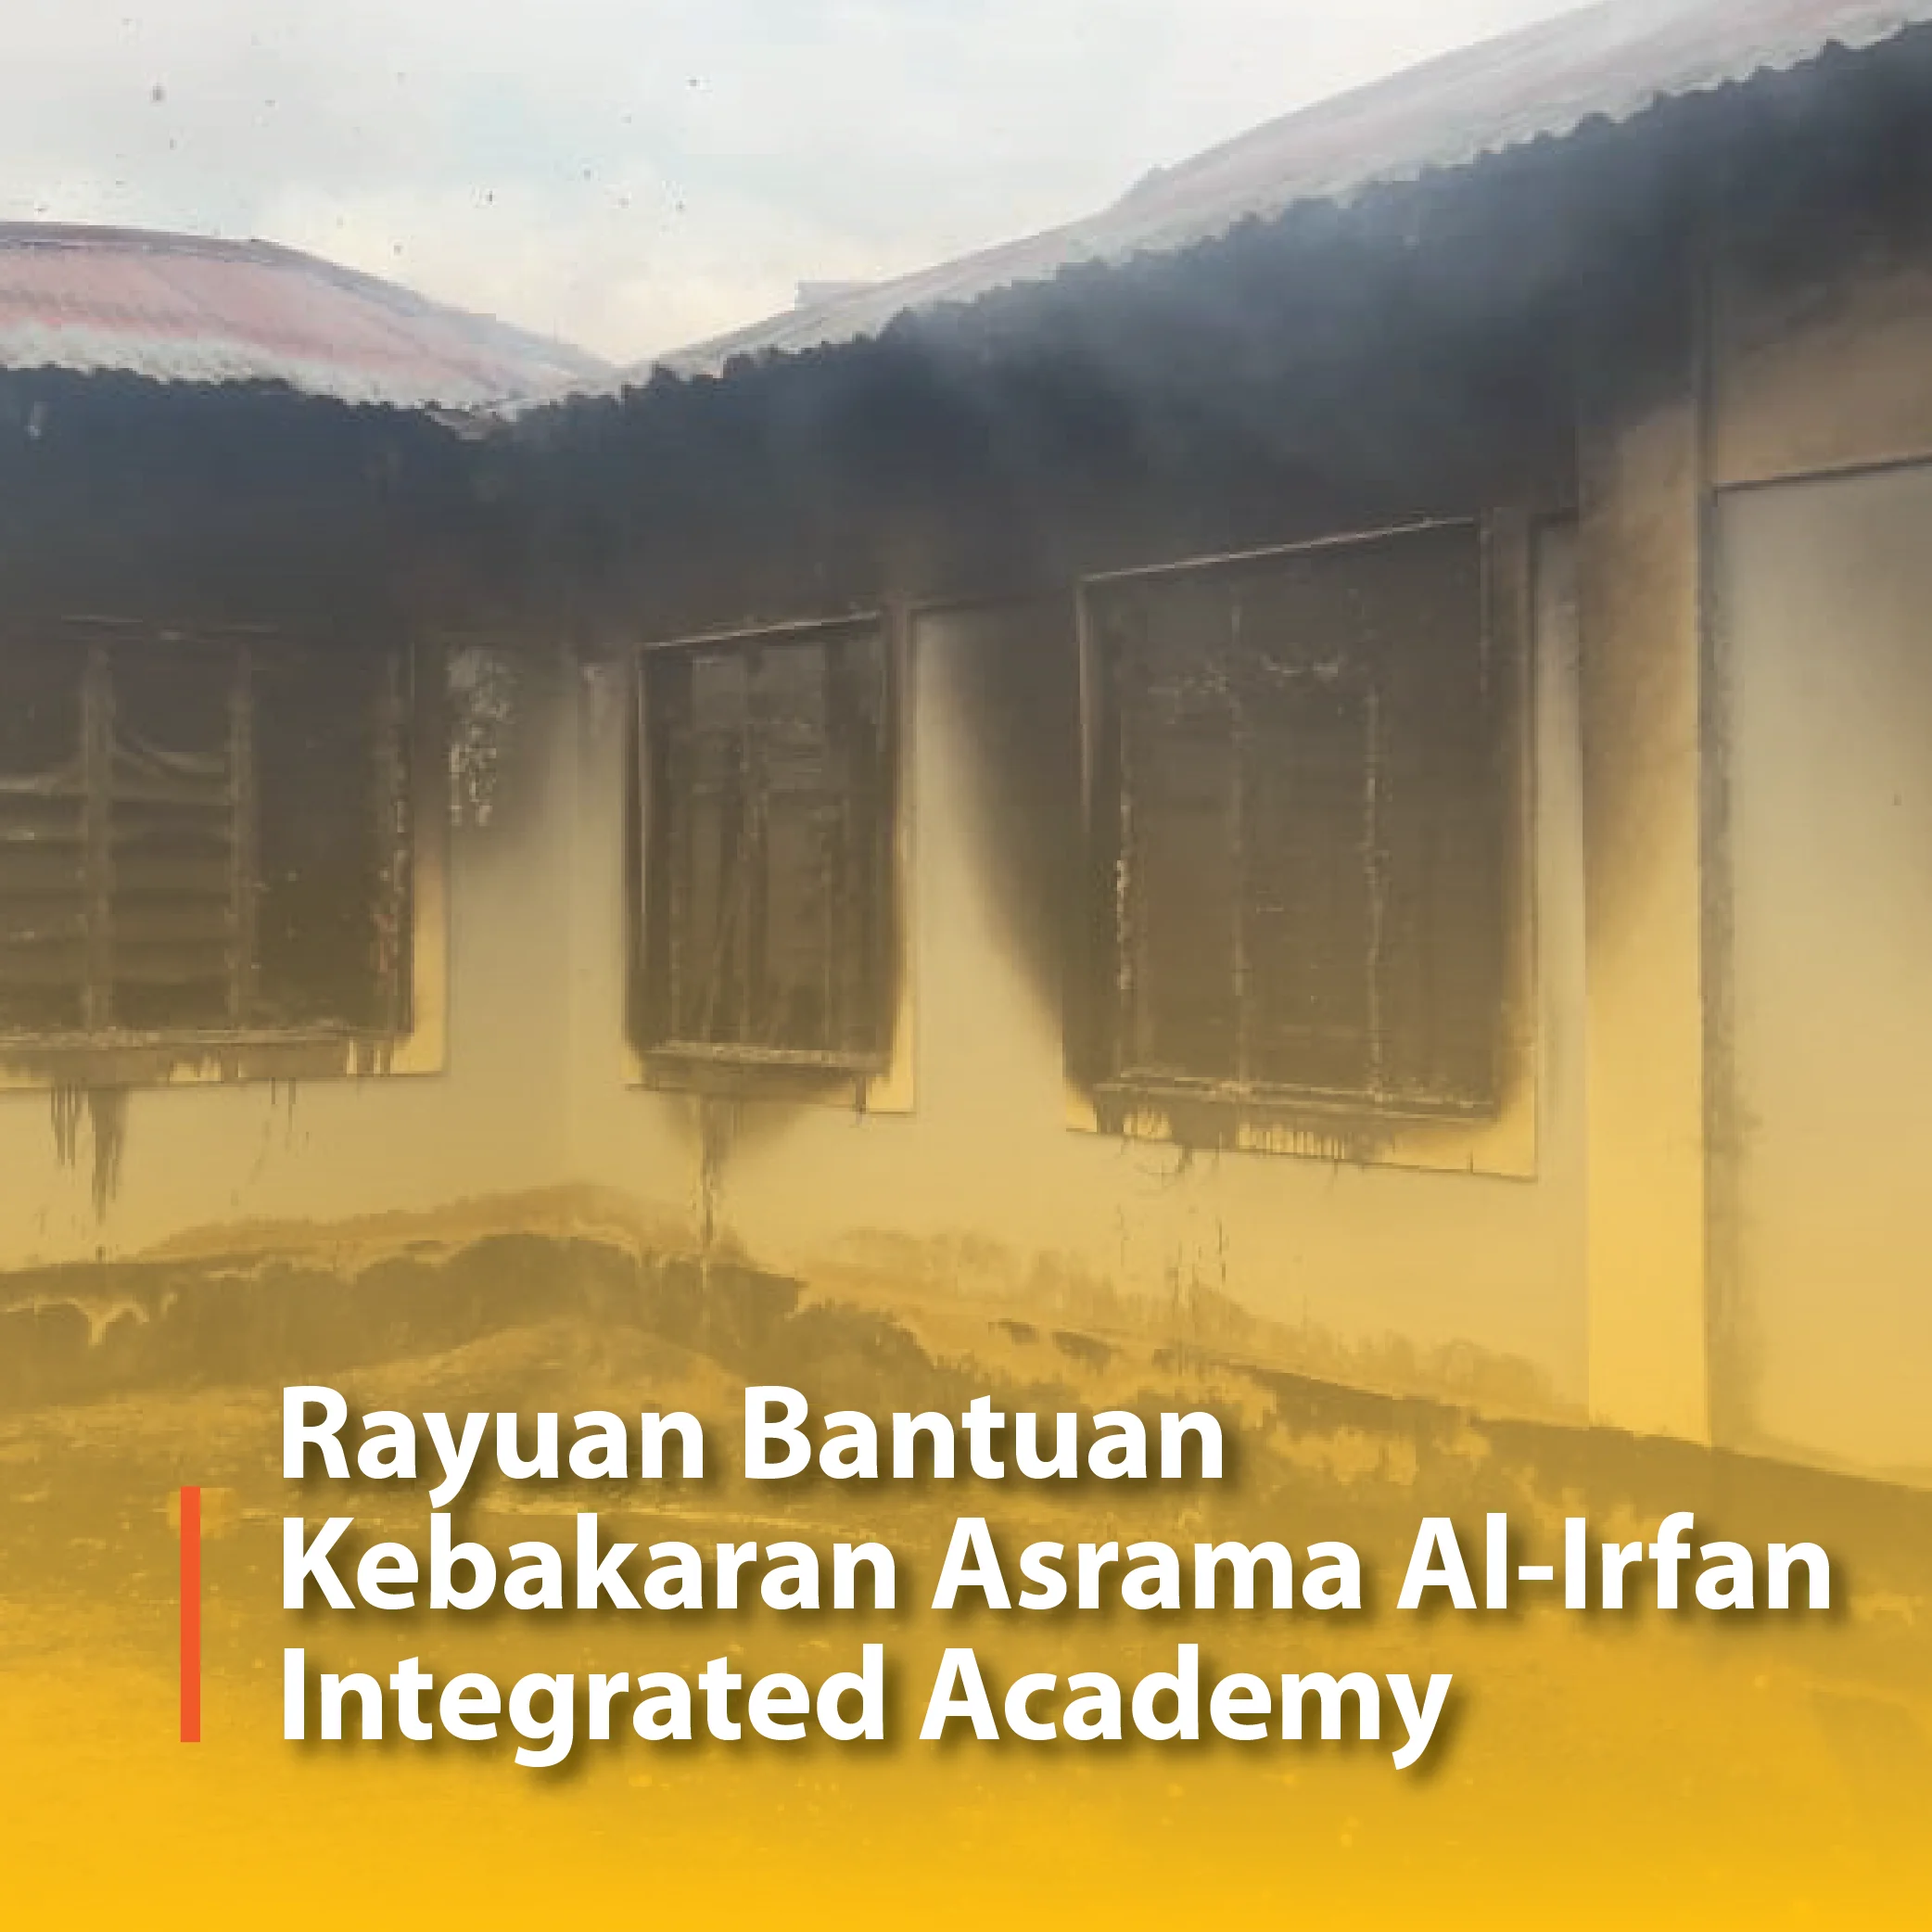 Rayuan Bantuan Kebakaran Asrama Al-Irfan Integrated Academy, Kenya